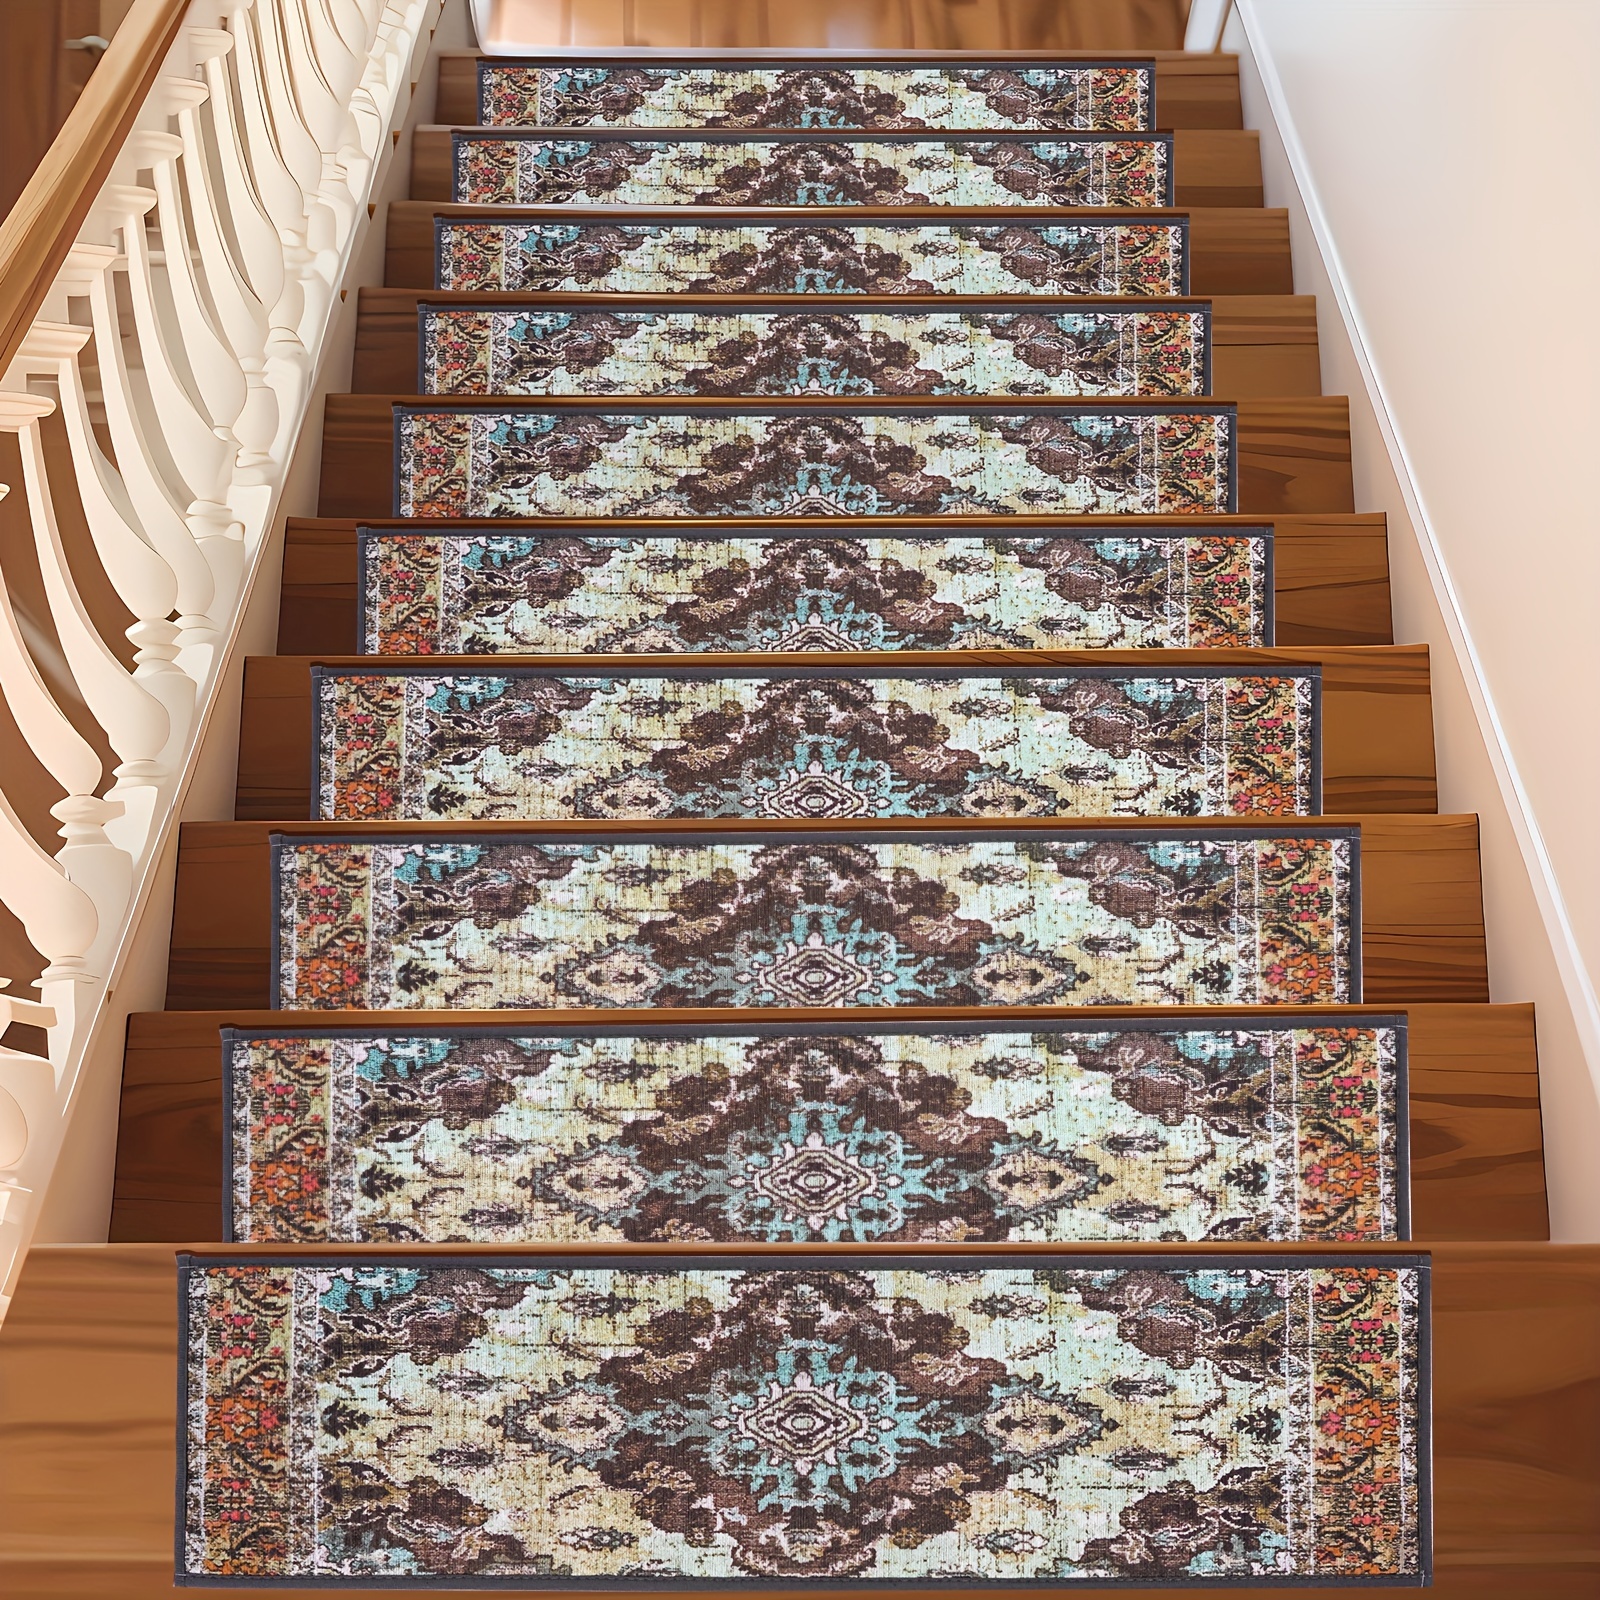 76cm weiche Treppe Stufenmatte Vielfalt Muster Selbstklebend Anti-Rutsch  Wasseraufnahme Treppe Teppich Matte Protektor Teppich